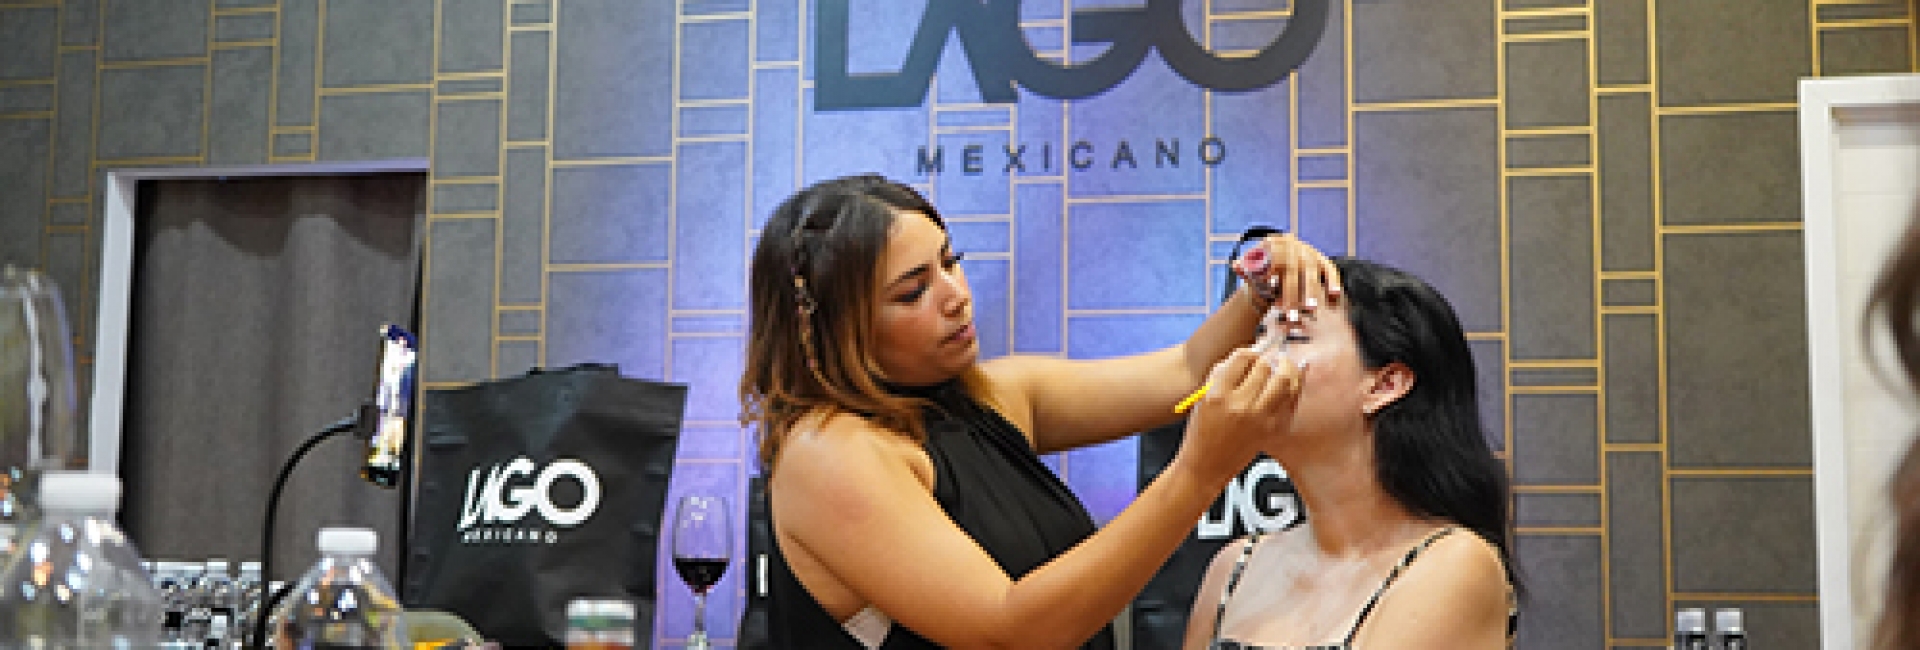 Wine & Make Up por Lago Mexicano y Mora Jorge Cosmetics.